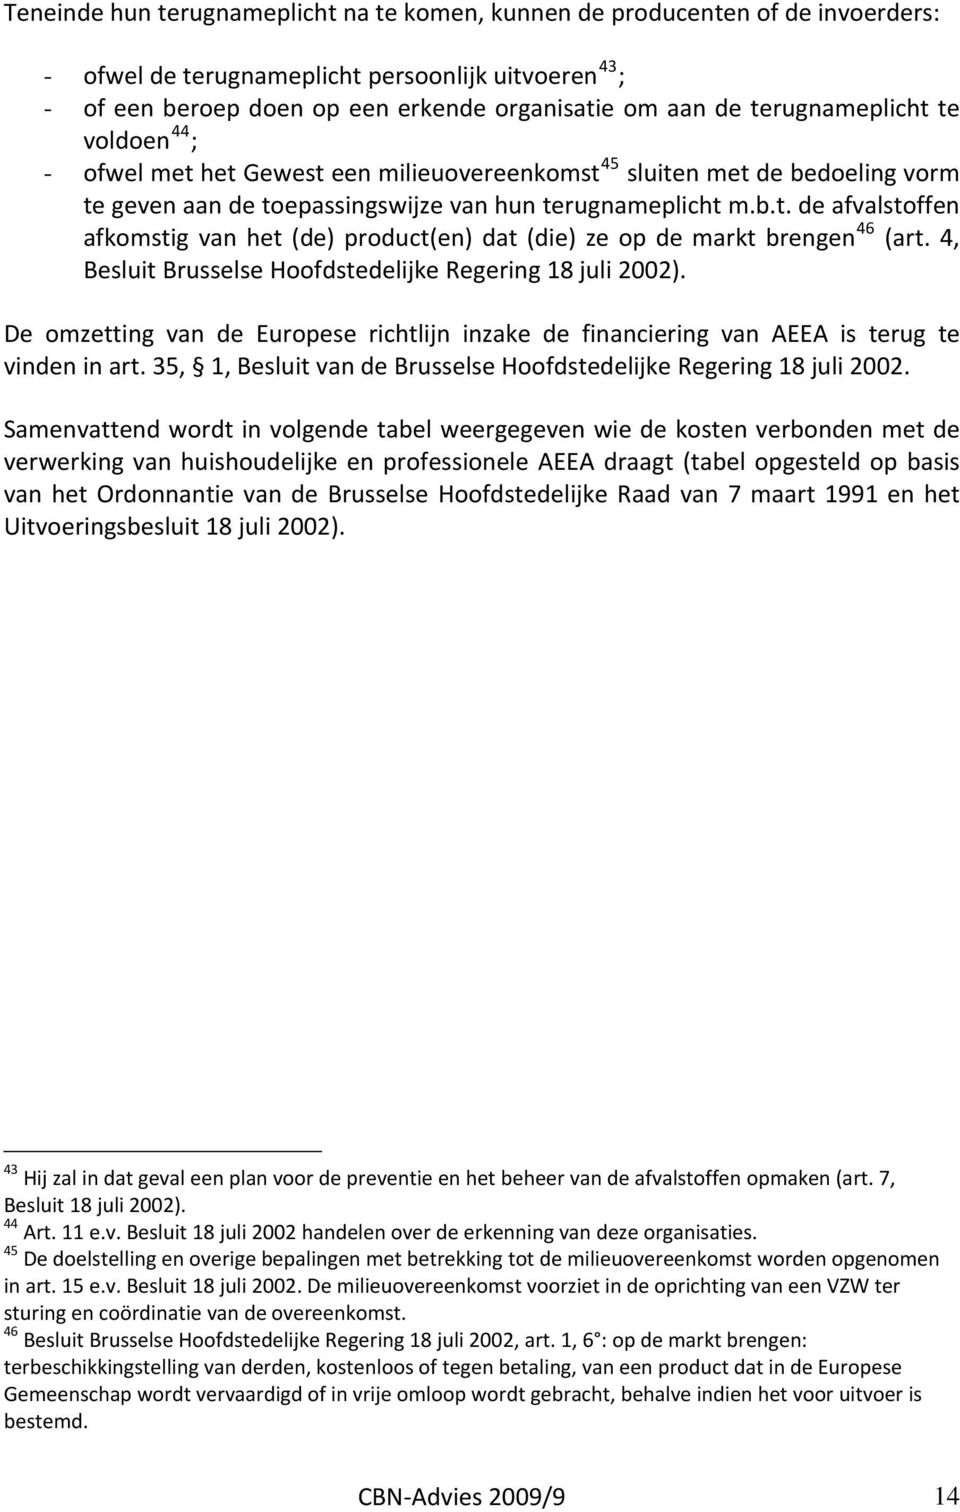 4, Besluit Brusselse Hoofdstedelijke Regering 18 juli 2002). De omzetting van de Europese richtlijn inzake de financiering van AEEA is terug te vinden in art.